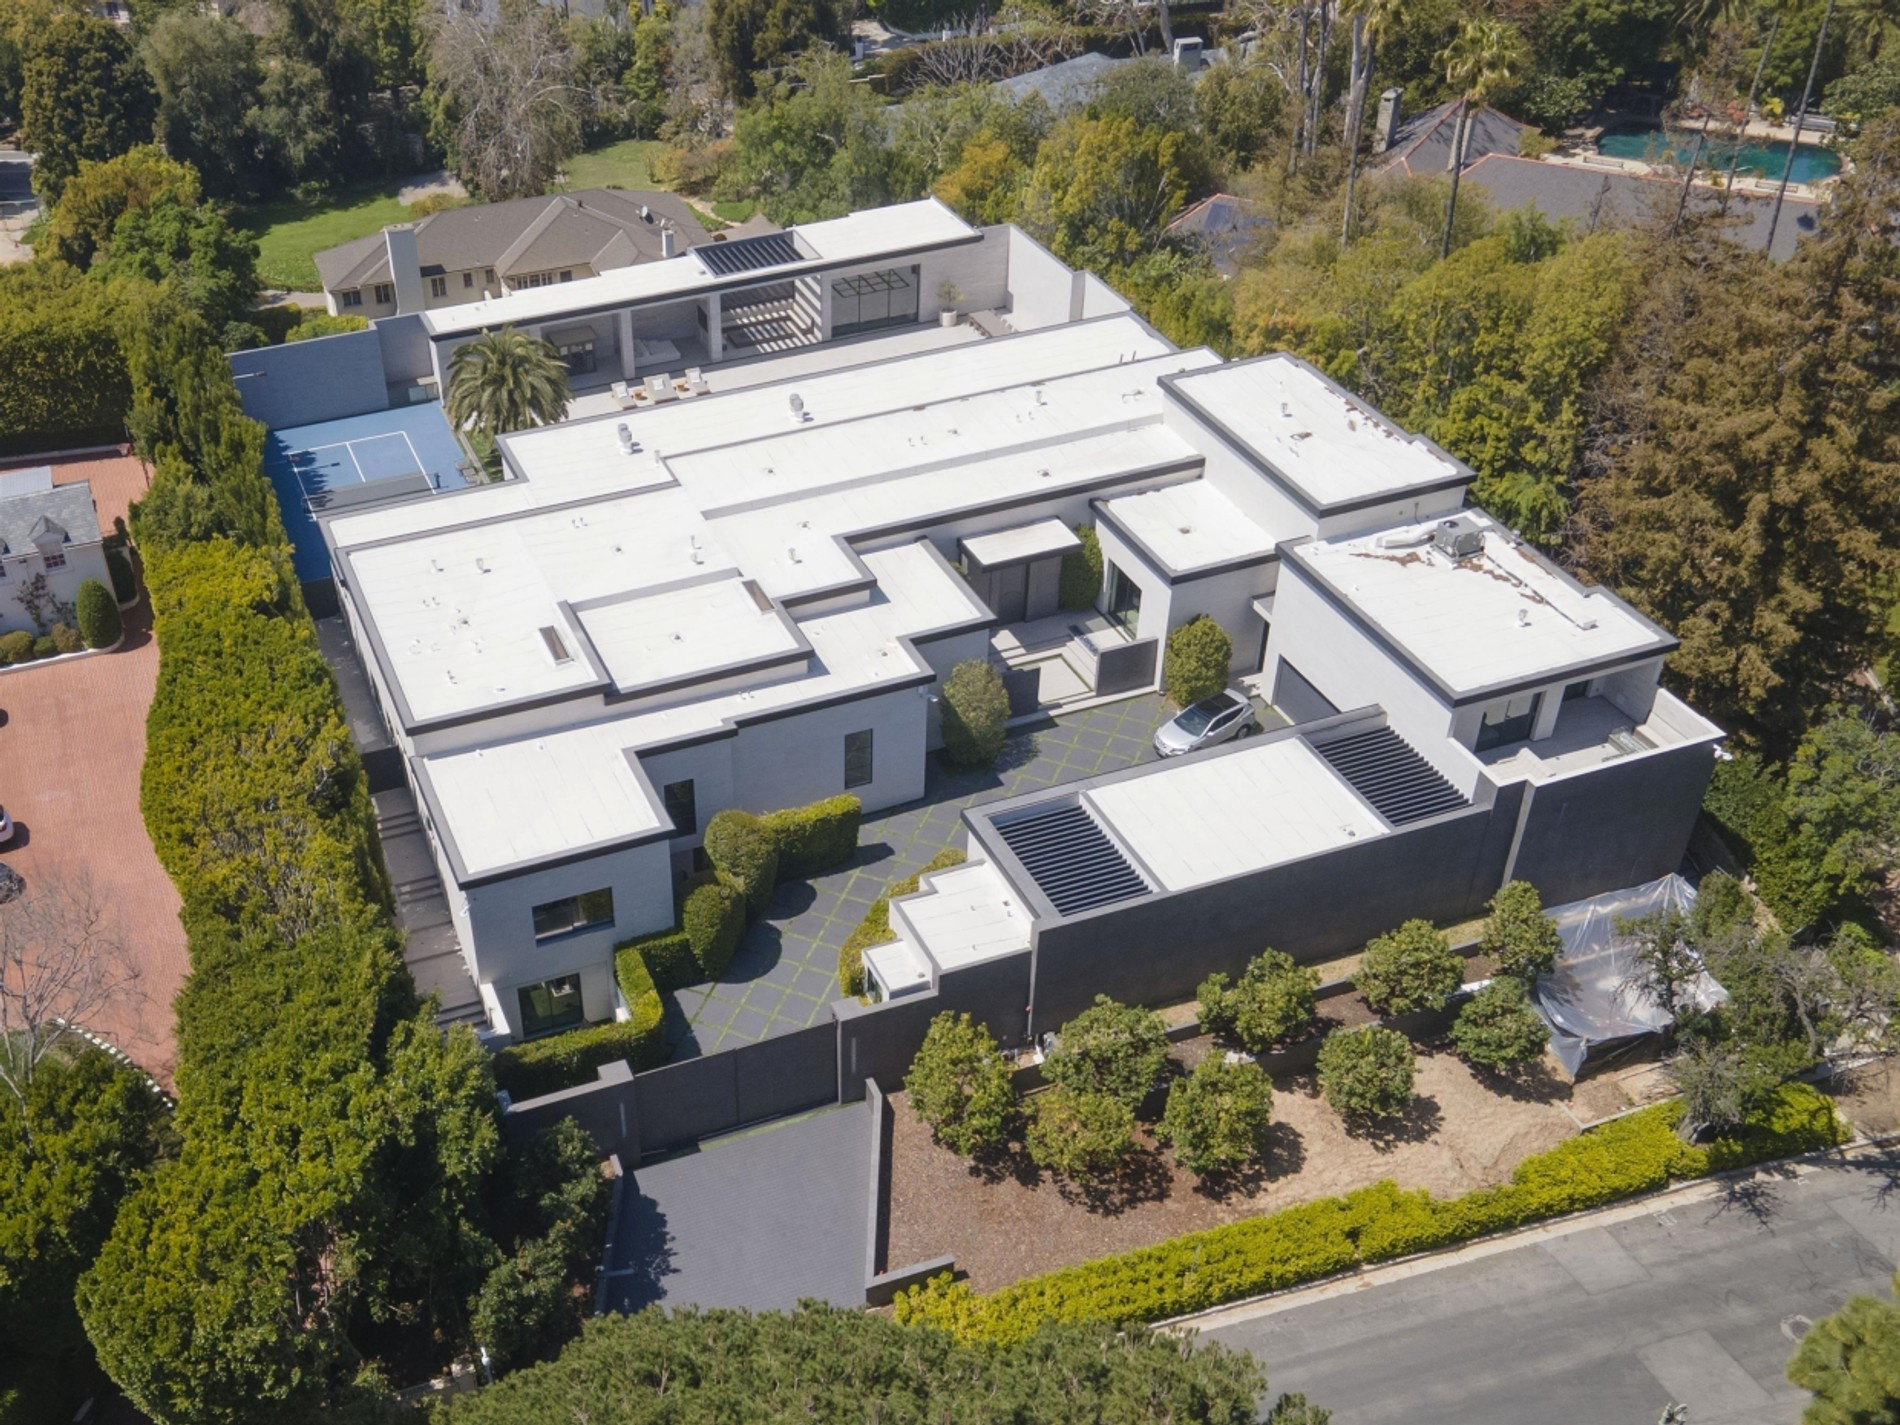 Дом Кайли в Лос-Анджелесе стоимостью более 36 миллионов долларов. Фото: BackGrid